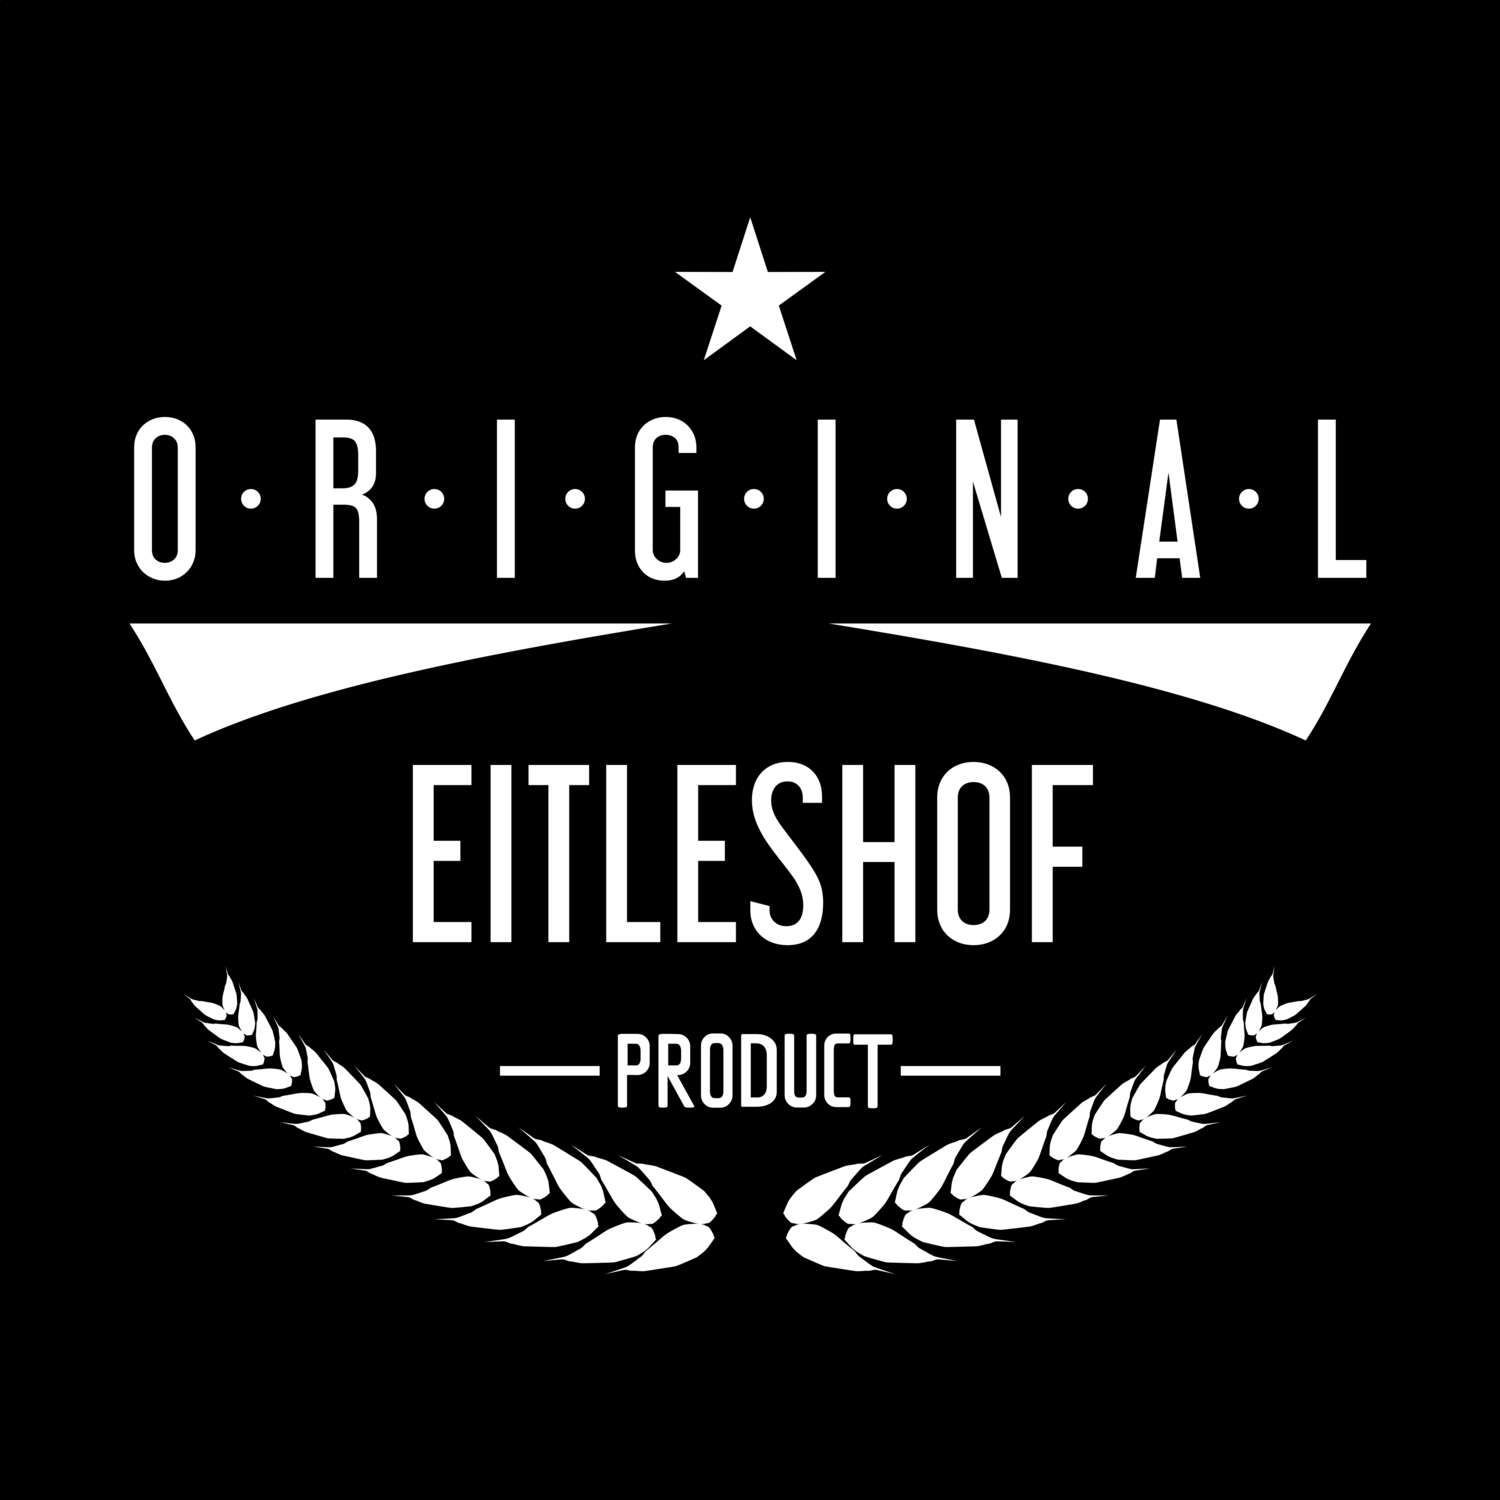 Eitleshof T-Shirt »Original Product«